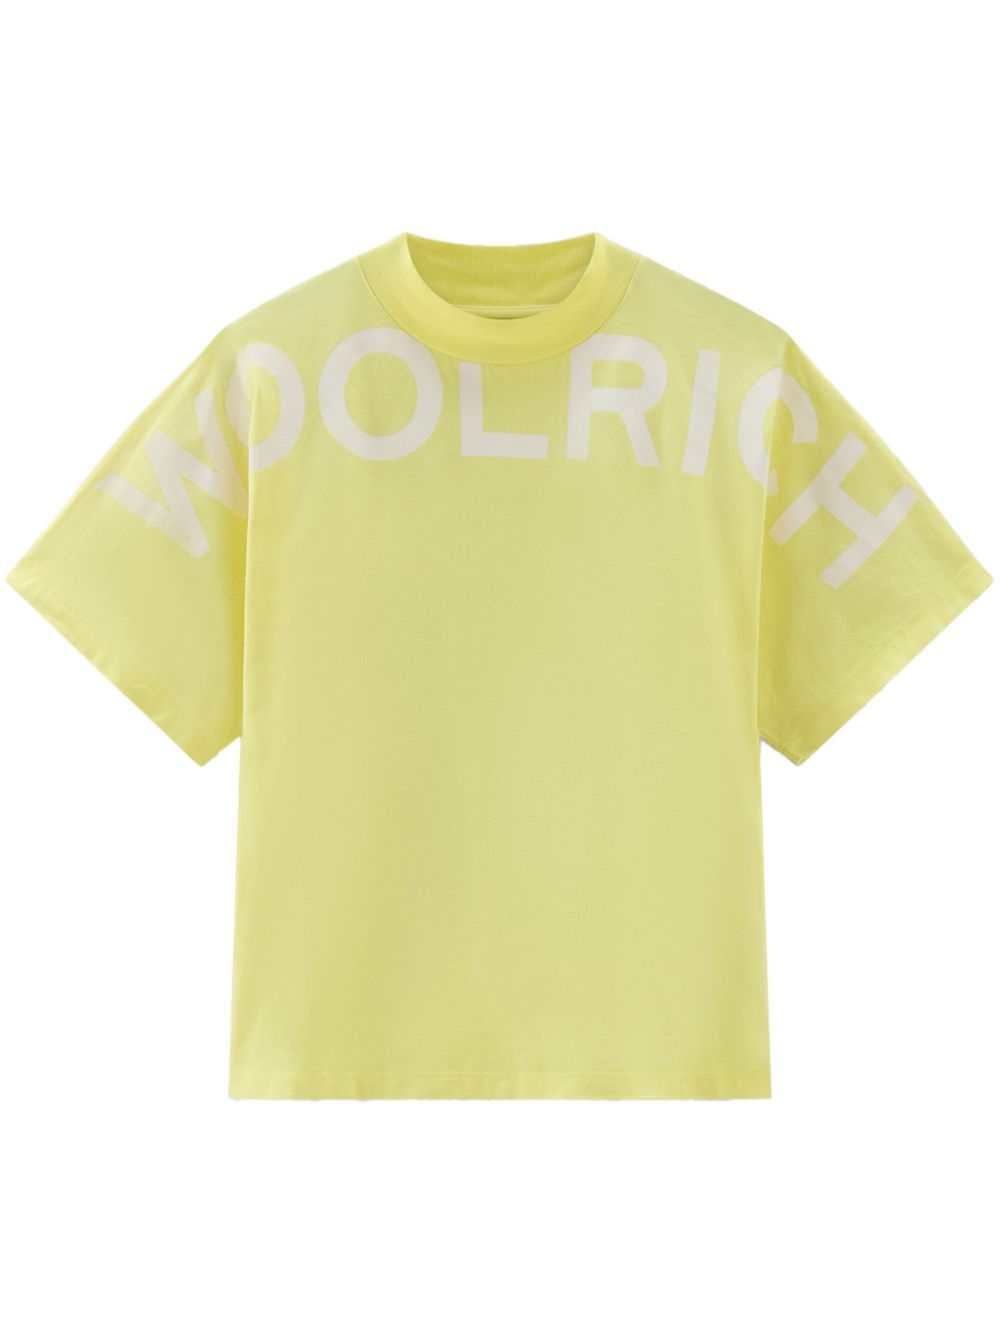 Woolrich Logo印花棉t恤 In Yellow